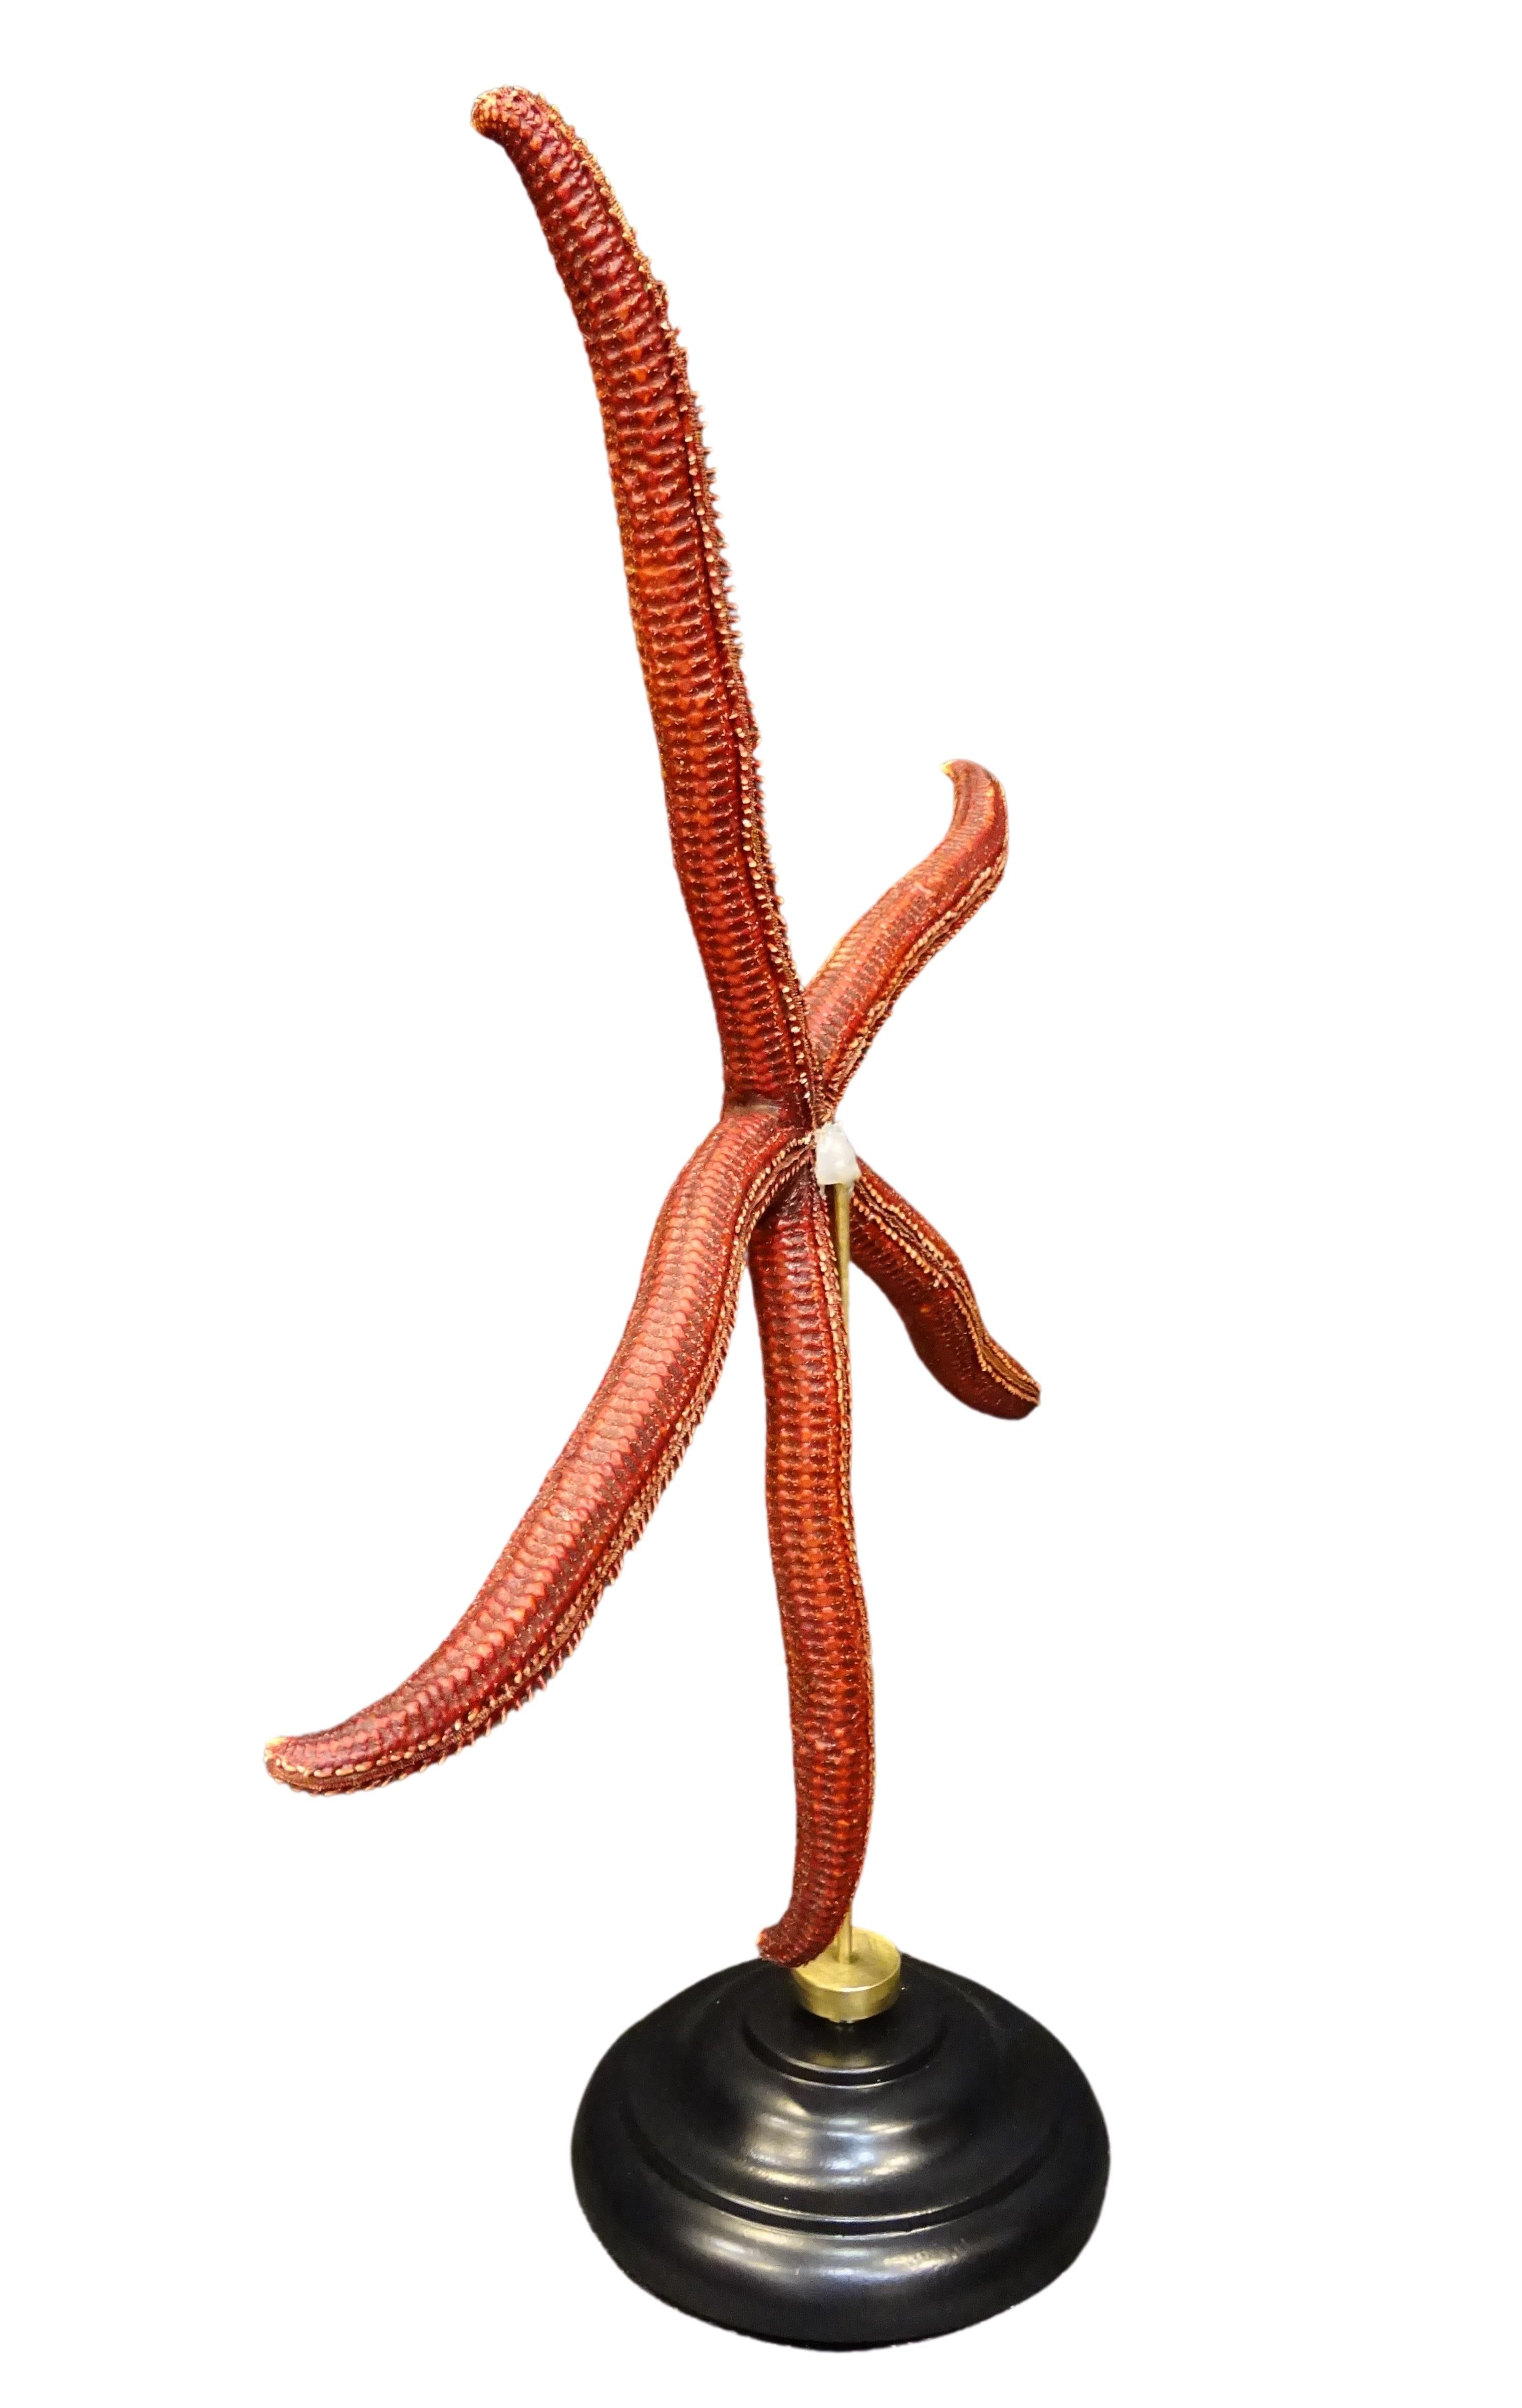 Ophidiaster ophidianus, mesures : 495 × 418 × 140 mm, poids 576 g
2018, Océano Pacífico
Étoile de mer rouge extra-large !
Un fantastique spécimen d'Ophidiaster ophidianus capturé dans les îles Salomon a été séché puis monté sur un élégant